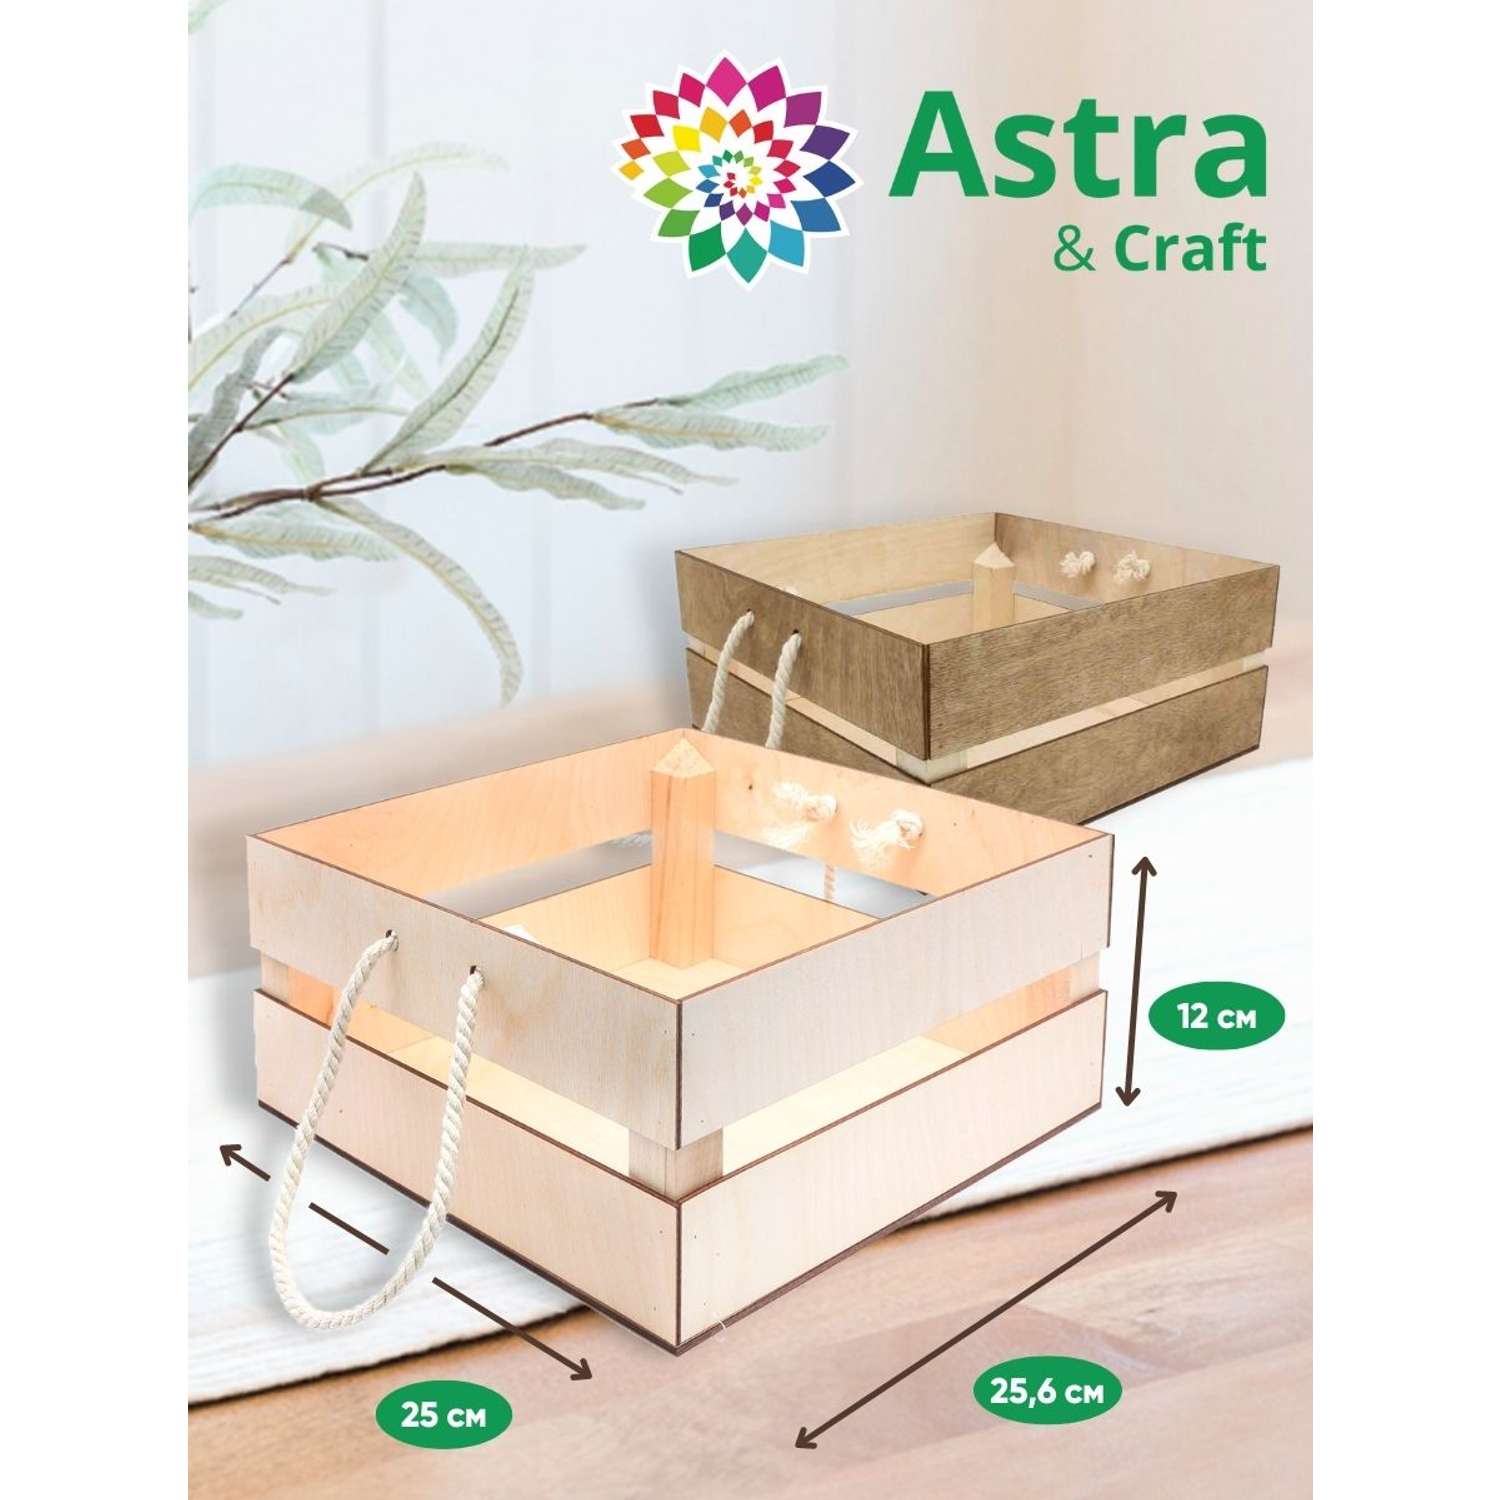 Кашпо Astra Craft с ручками для творчества рукоделия флористики 25.6х25х12 см белый - фото 2